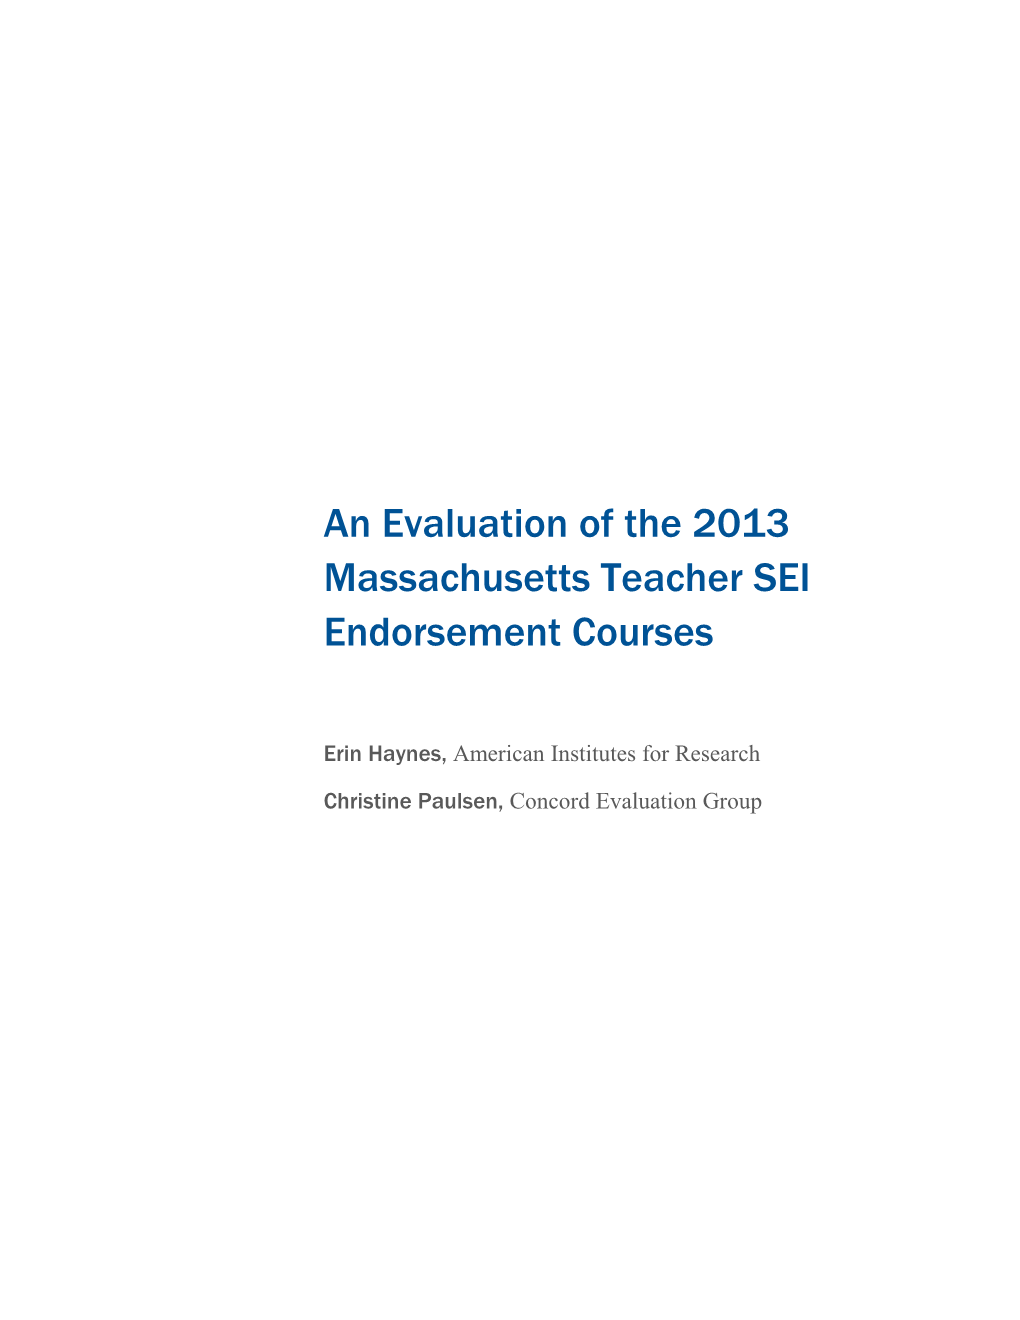 SEI Endorsement Courses Evaluation (July 2013)